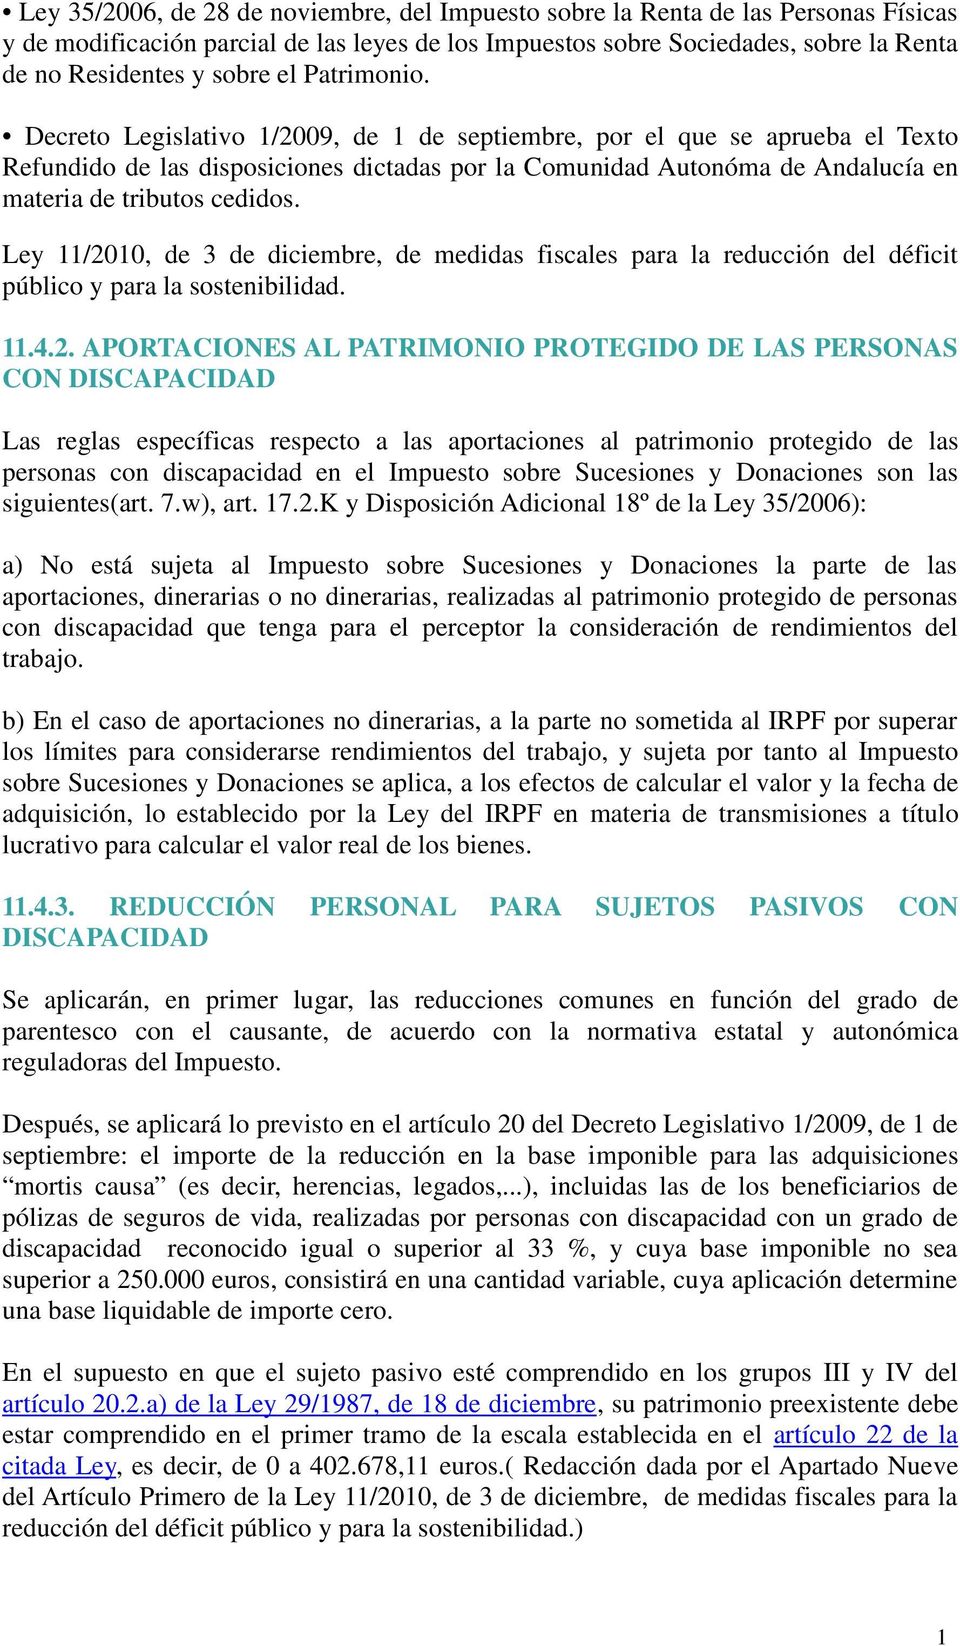 Decreto Legislativo 1/2009, de 1 de septiembre, por el que se aprueba el Texto Refundido de las disposiciones dictadas por la Comunidad Autonóma de Andalucía en materia de tributos cedidos.